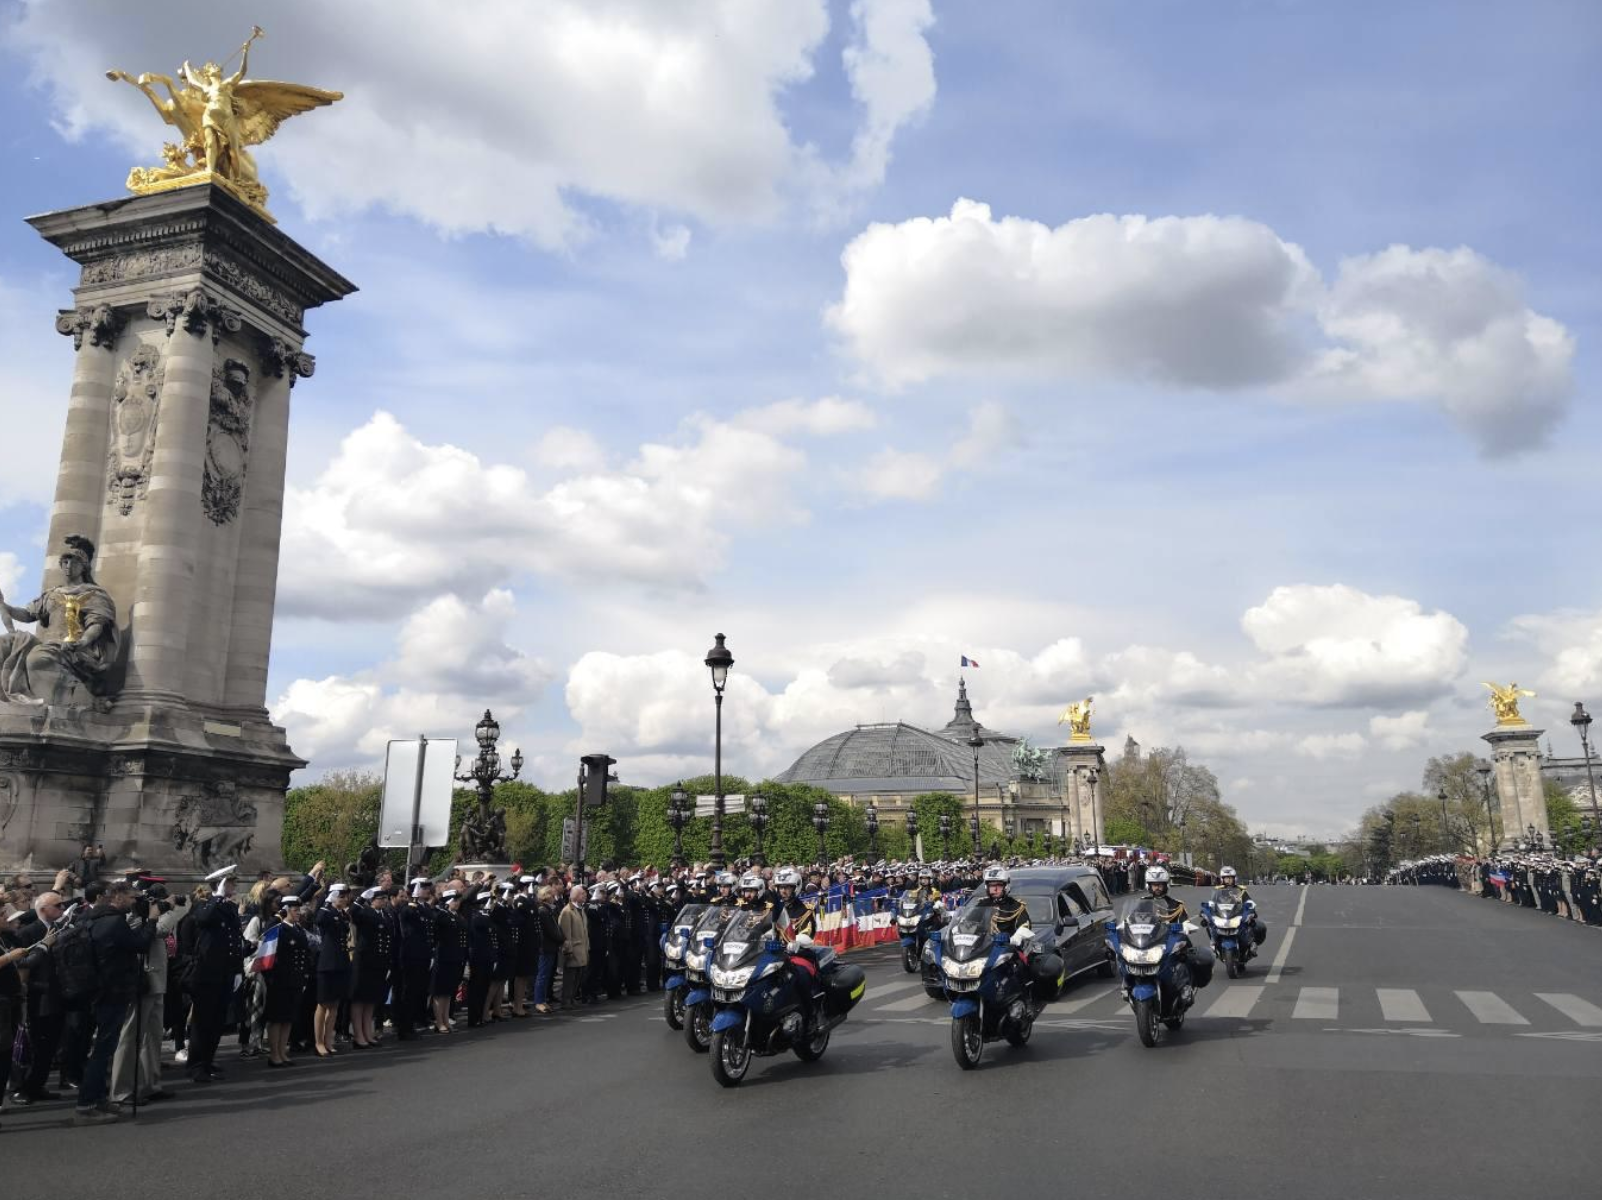 La population est invitée mardi 14 mai à 10h (Paris) sur le pont Alexandre III à manifester son respect et sa solidarité avec les familles des deux soldats disparus par une présence recueillie au passage du cortège funéraire